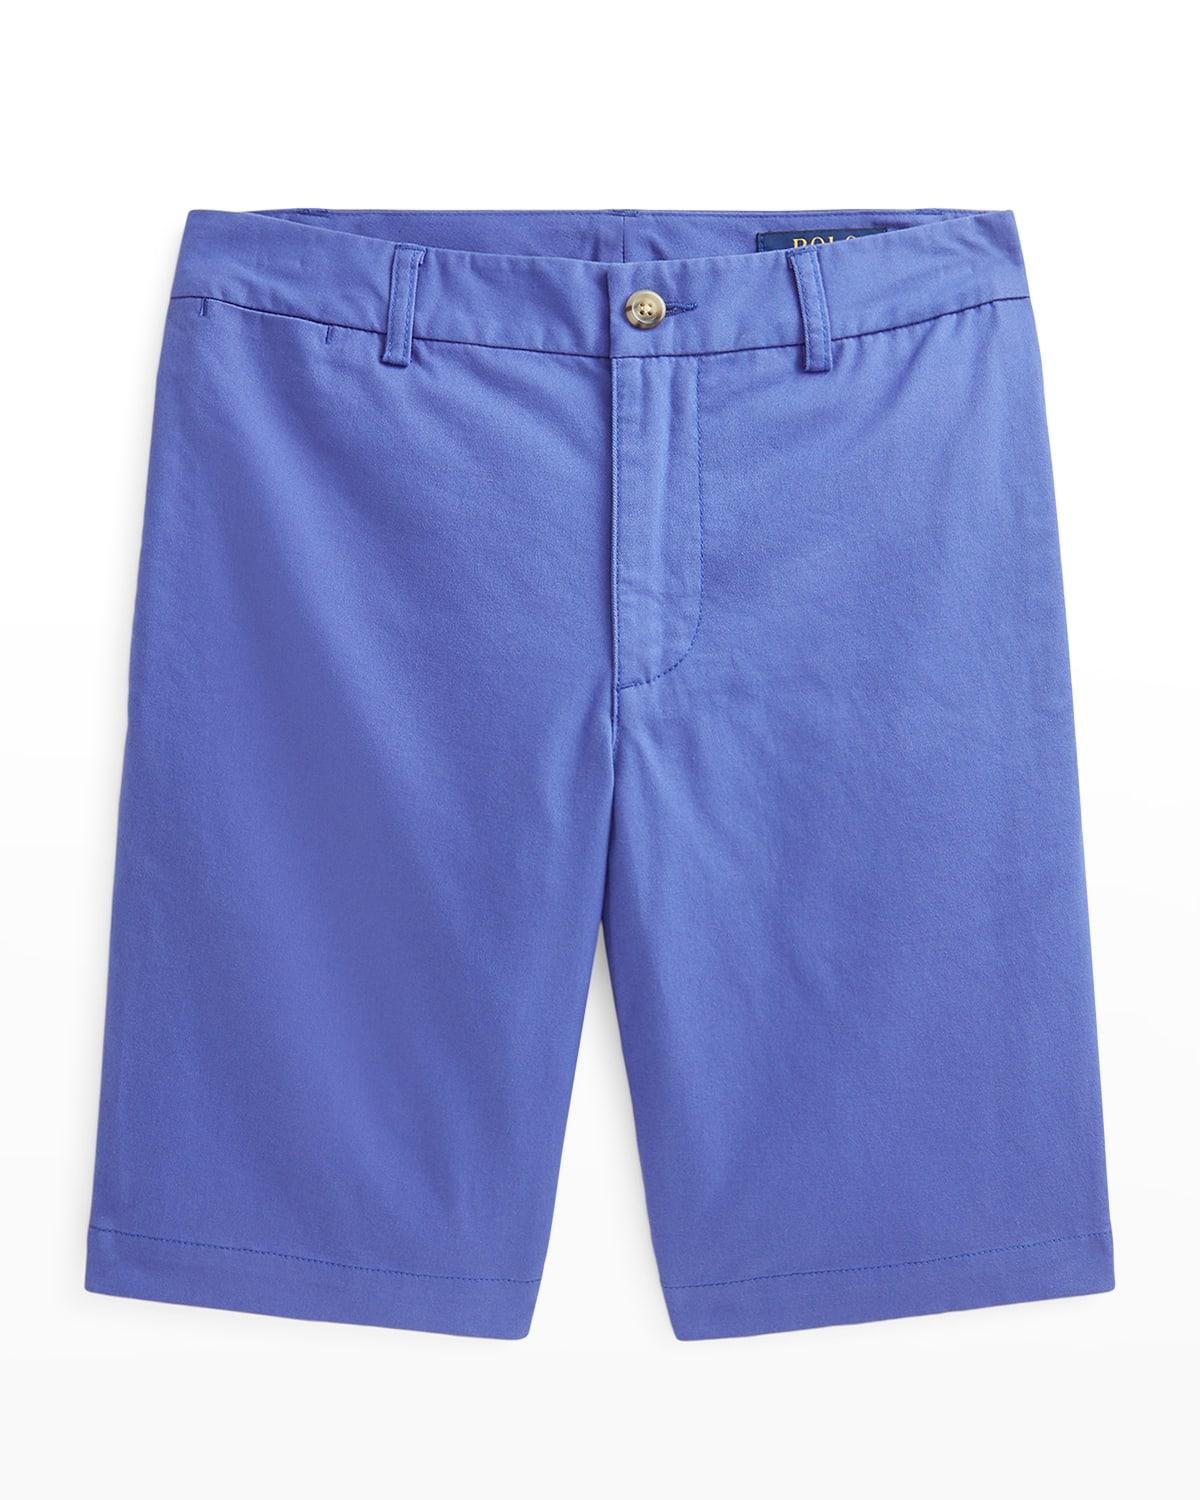 Boy's Straight Fit Flex Abrasion Twill Preppy Shorts, Size 8-10 by RALPH LAUREN CHILDRENSWEAR